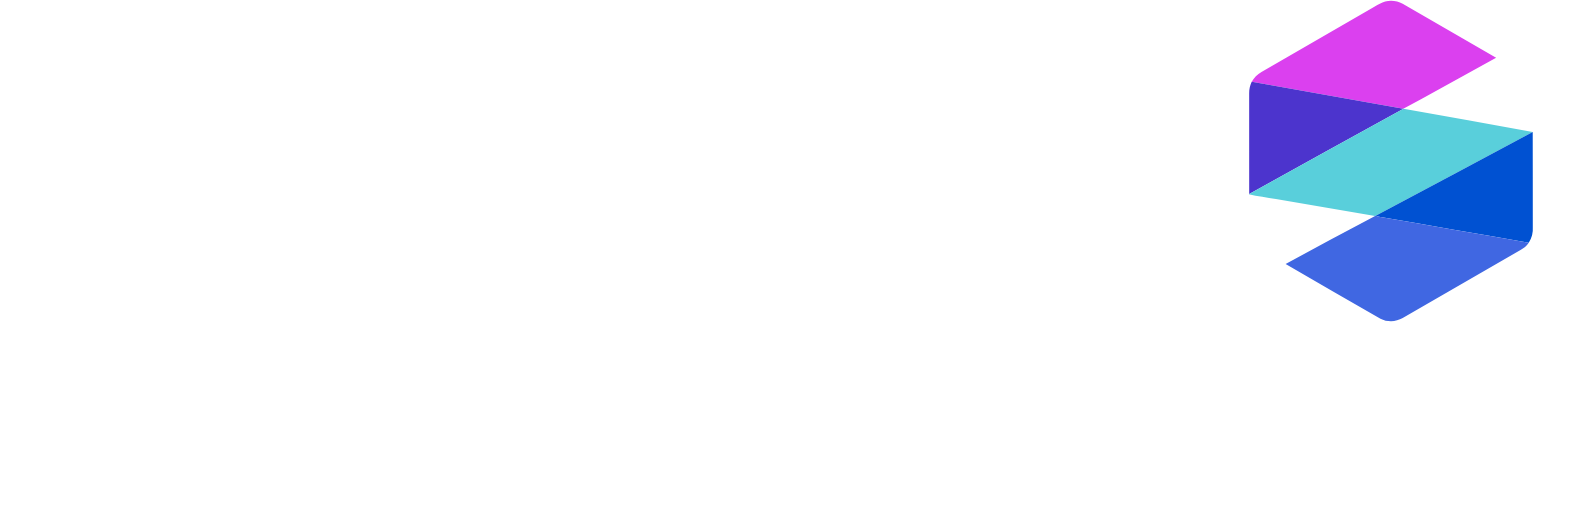 SomaLogic Logo groß für dunkle Hintergründe (transparentes PNG)